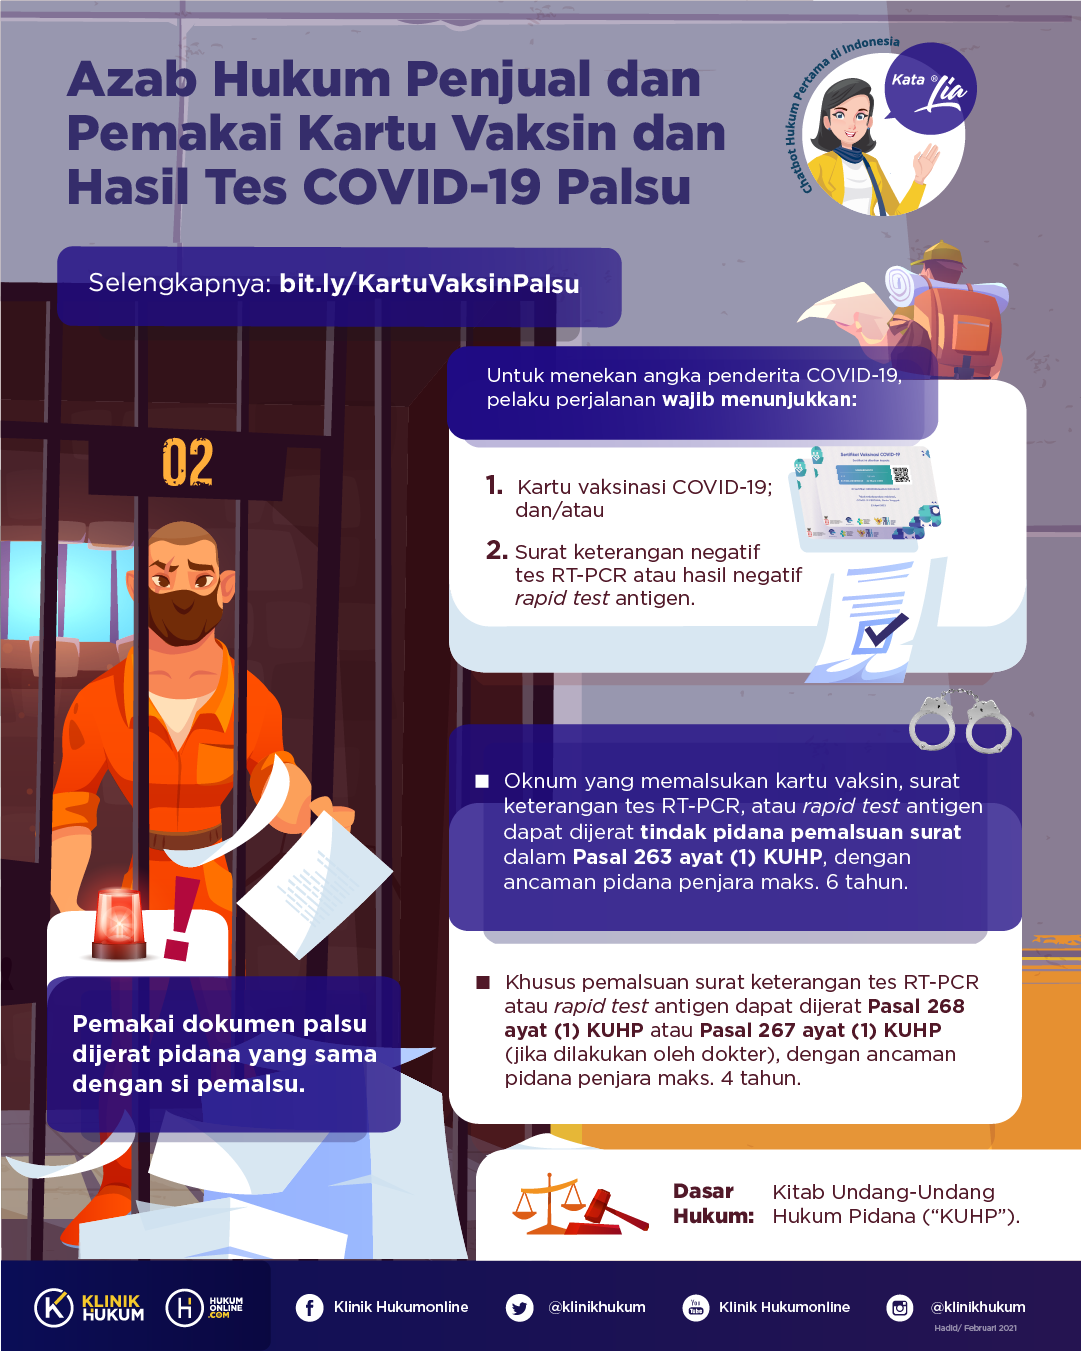 Azab Hukum Penjual dan Pemakai Kartu Vaksin dan Hasil Tes COVID-19 Palsu